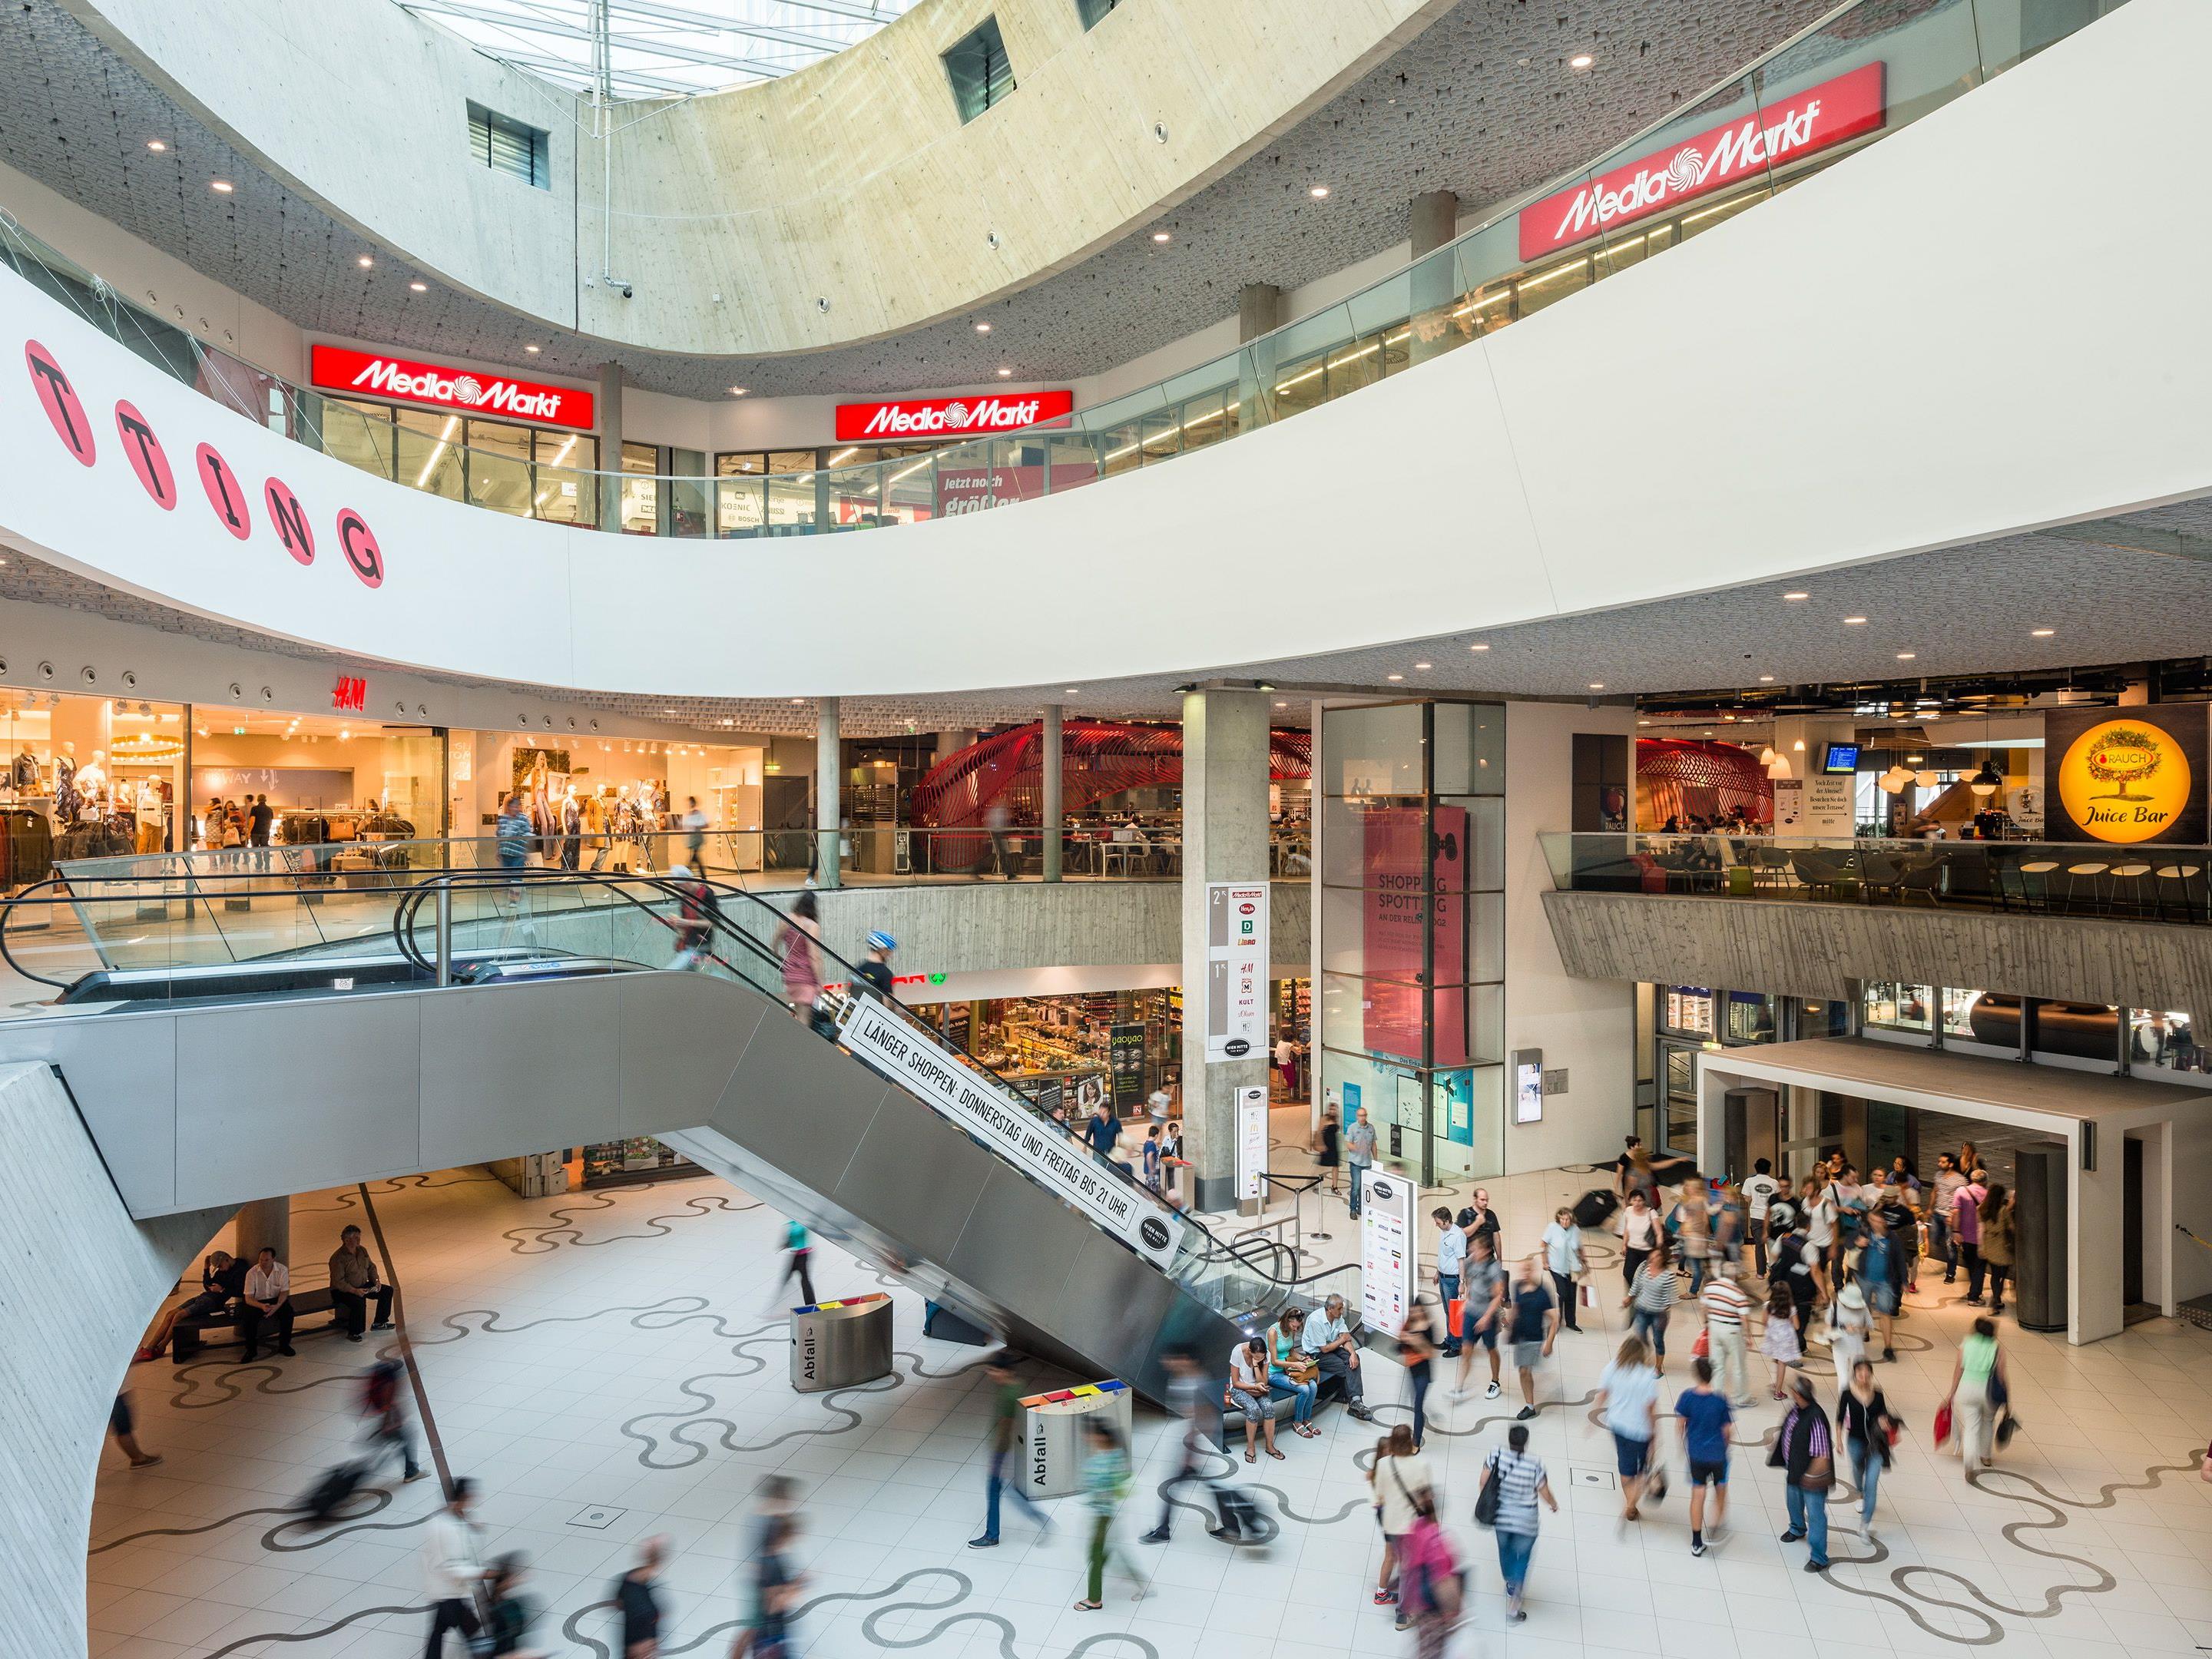 "The Mall" konnte 2016 ein Rekordjahr verzeichnen